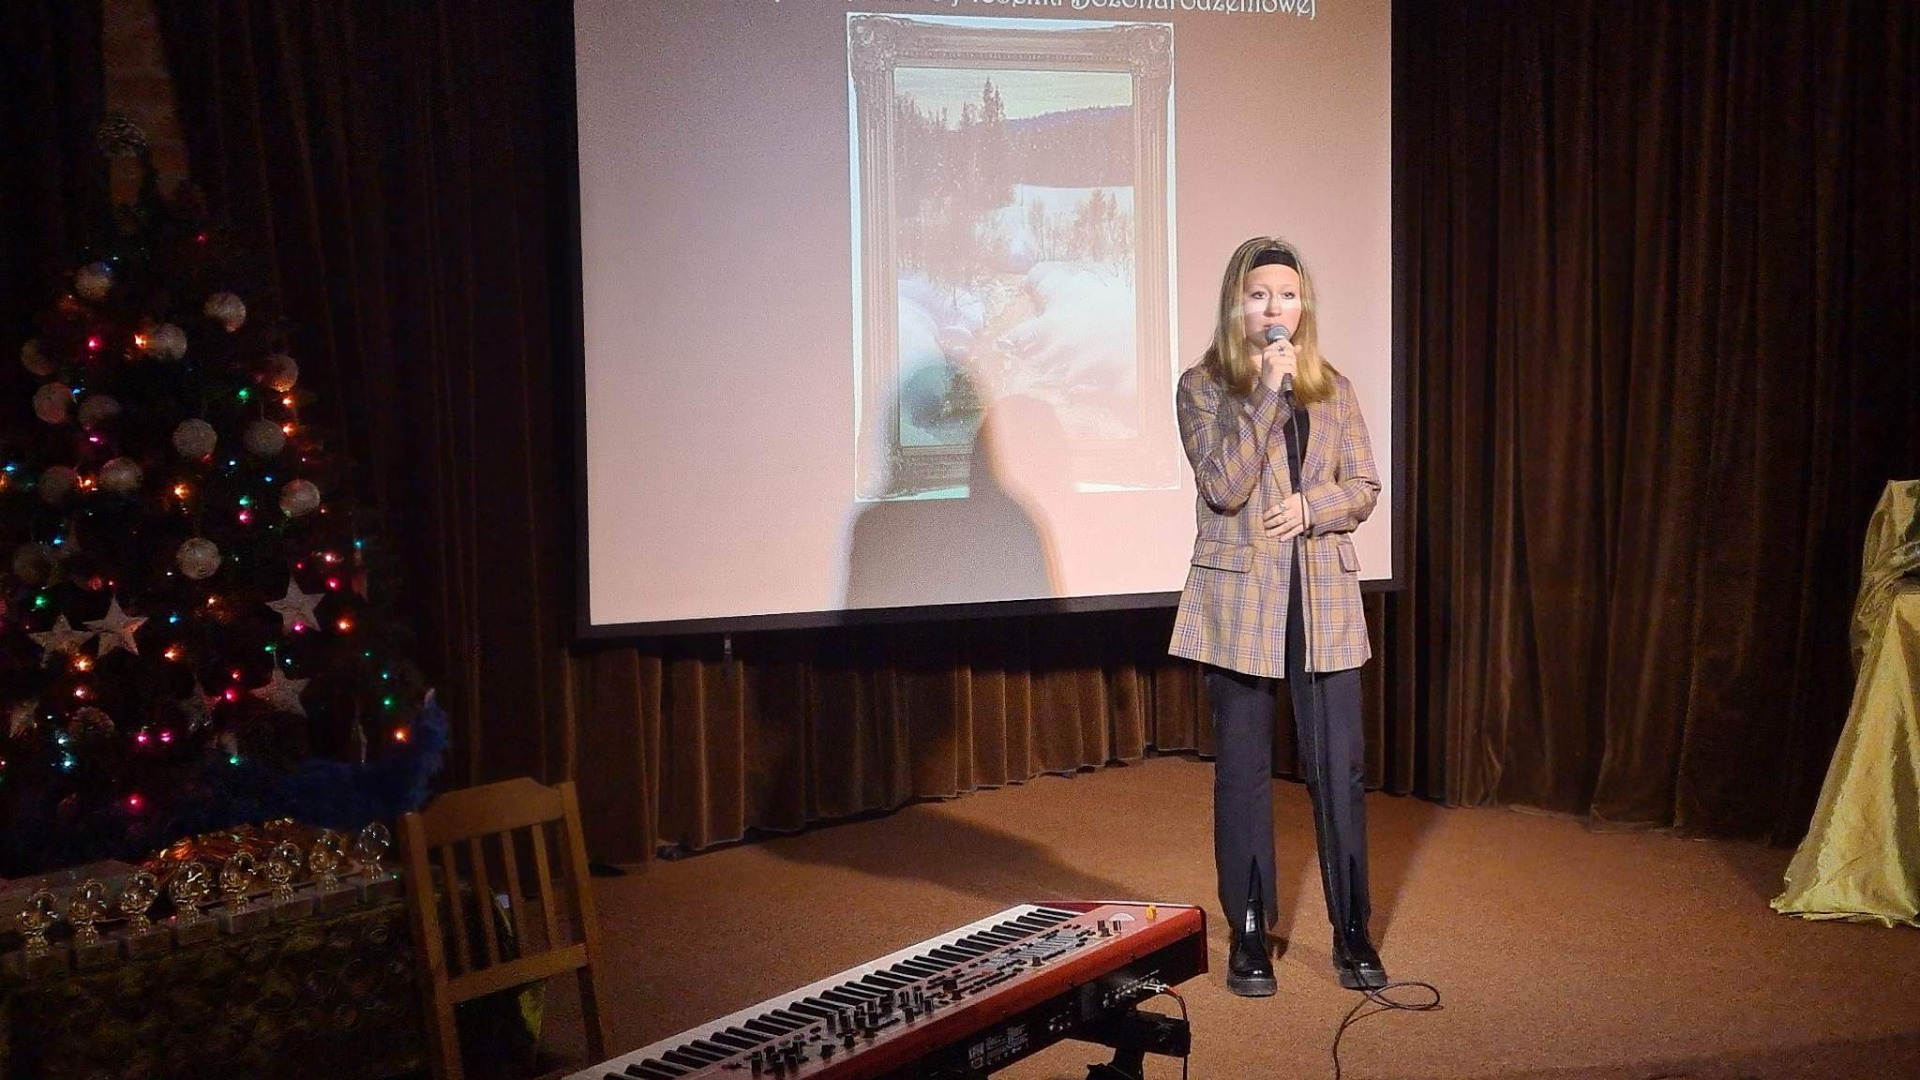 Dziewczyna w marynarce w kratkę i czarnych spodniach stoi na scenie. W ręku trzyma mikrofon. W tle widoczna dekoracja: prezentacja z motywami świątecznymi, choinka, pianino.